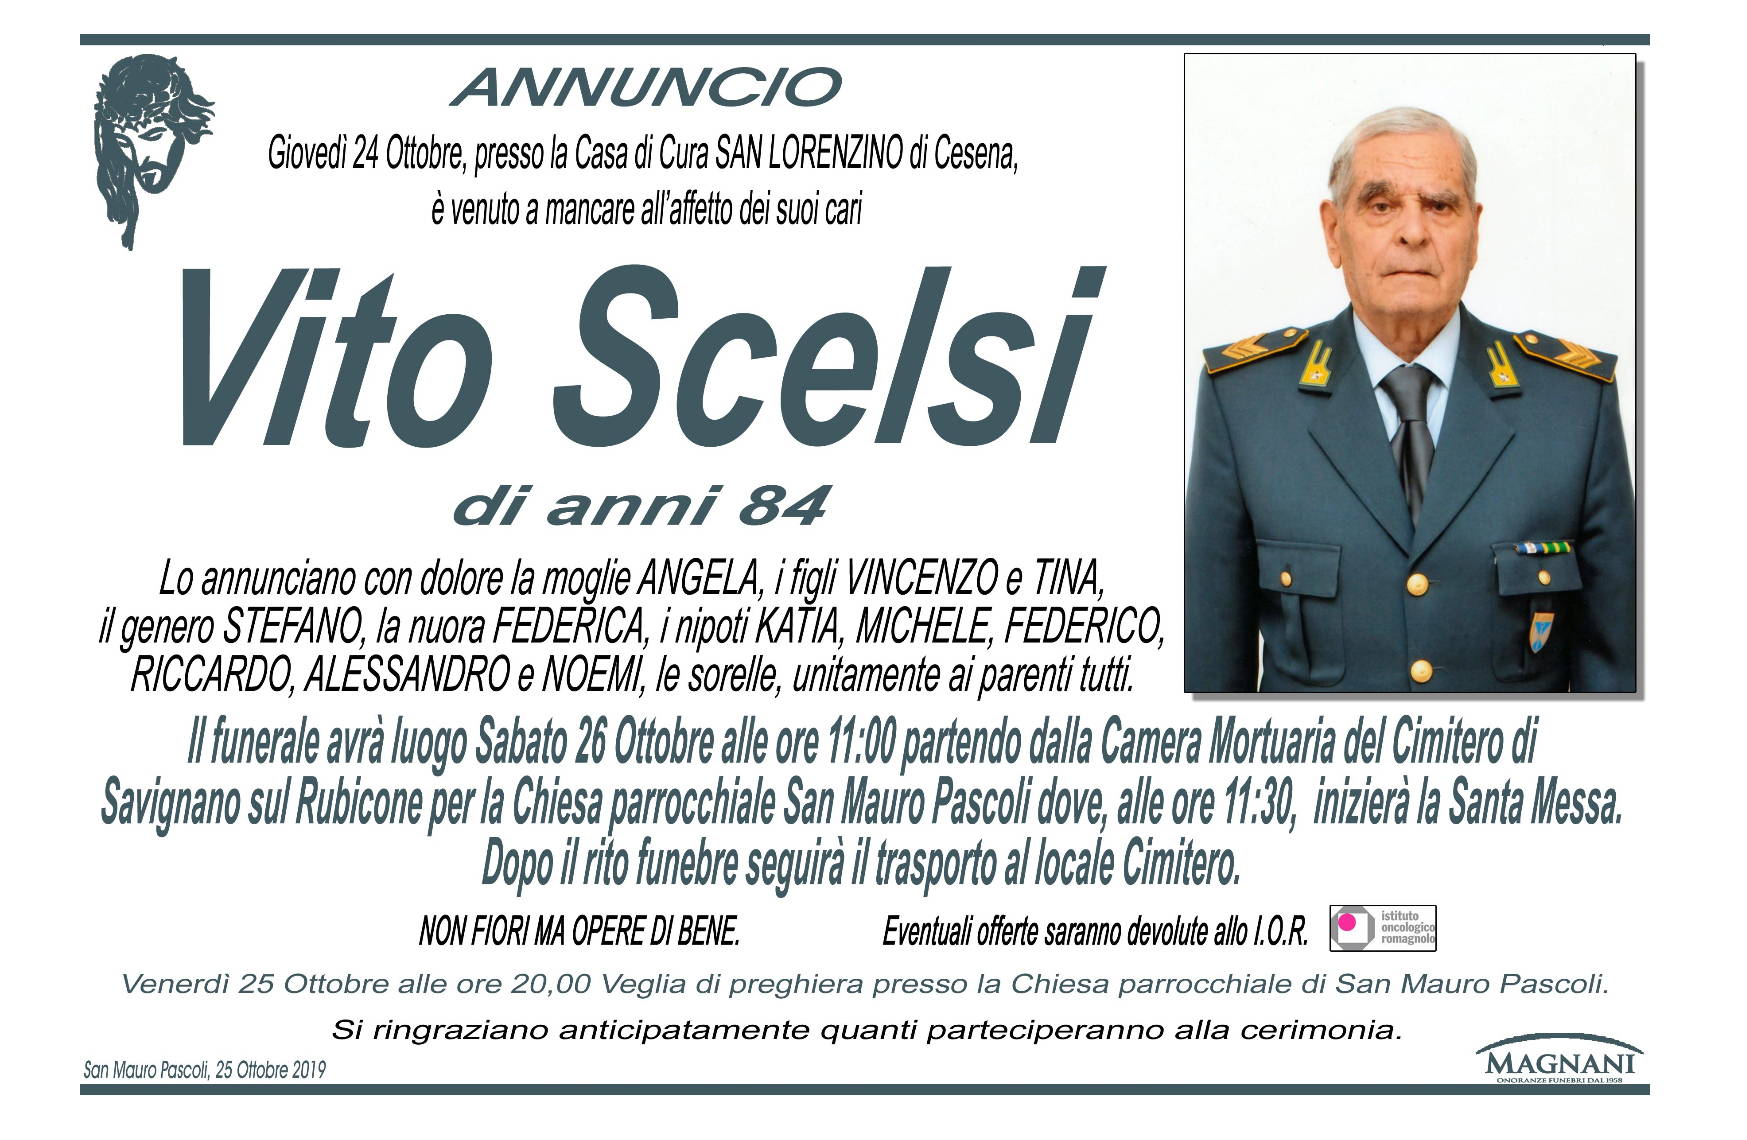 Vito Scelsi